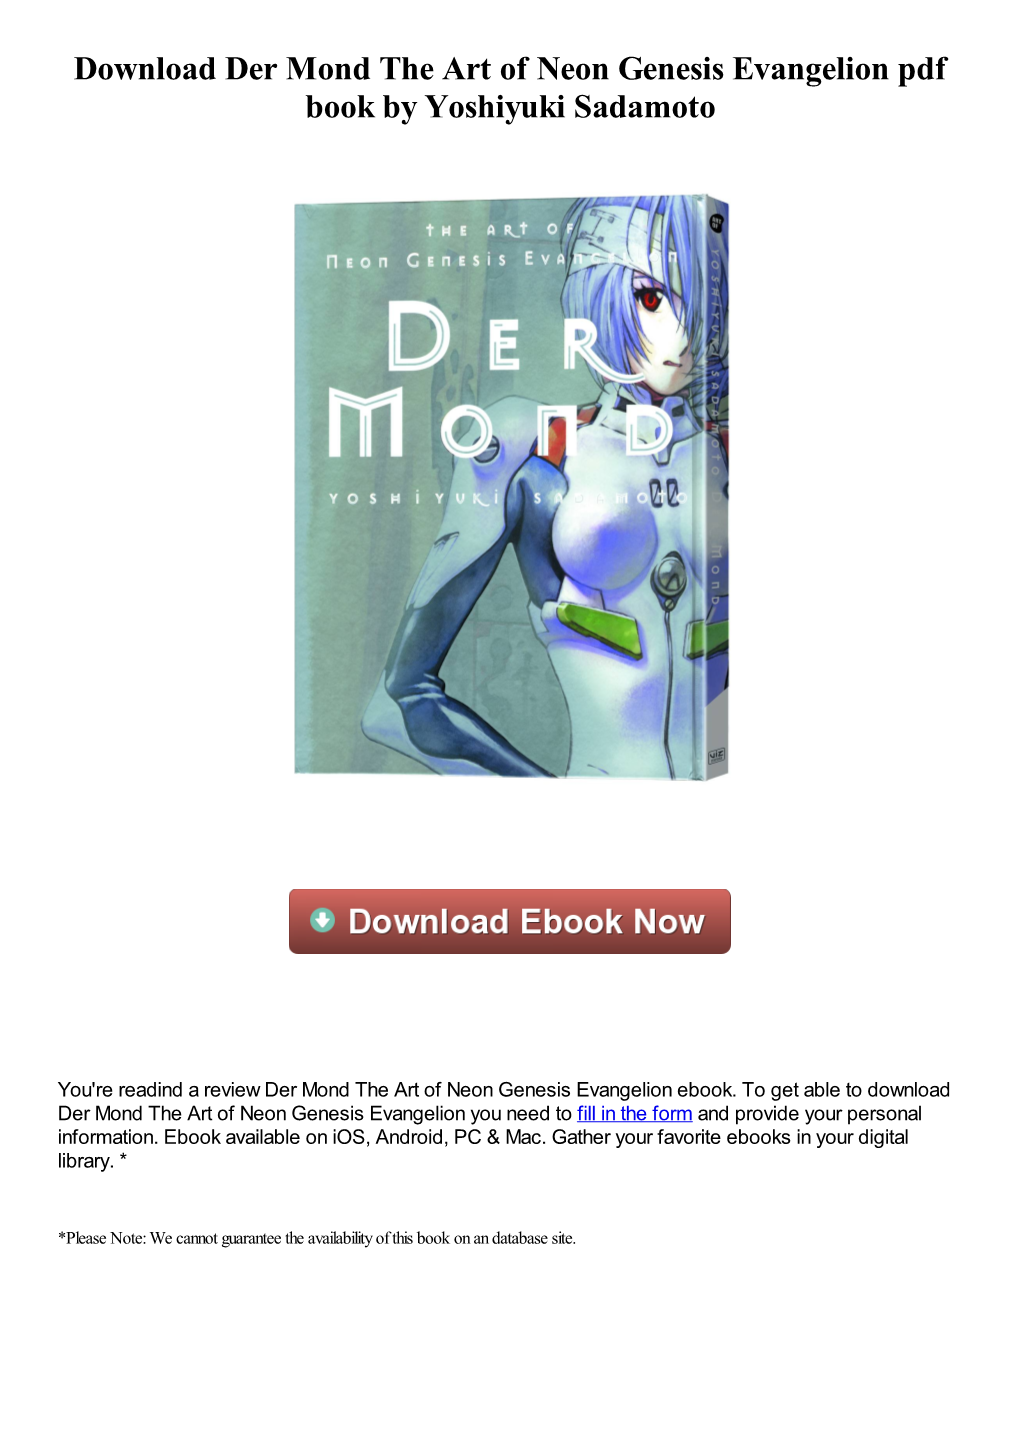 Download Der Mond the Art of Neon Genesis Evangelion Pdf Ebook By